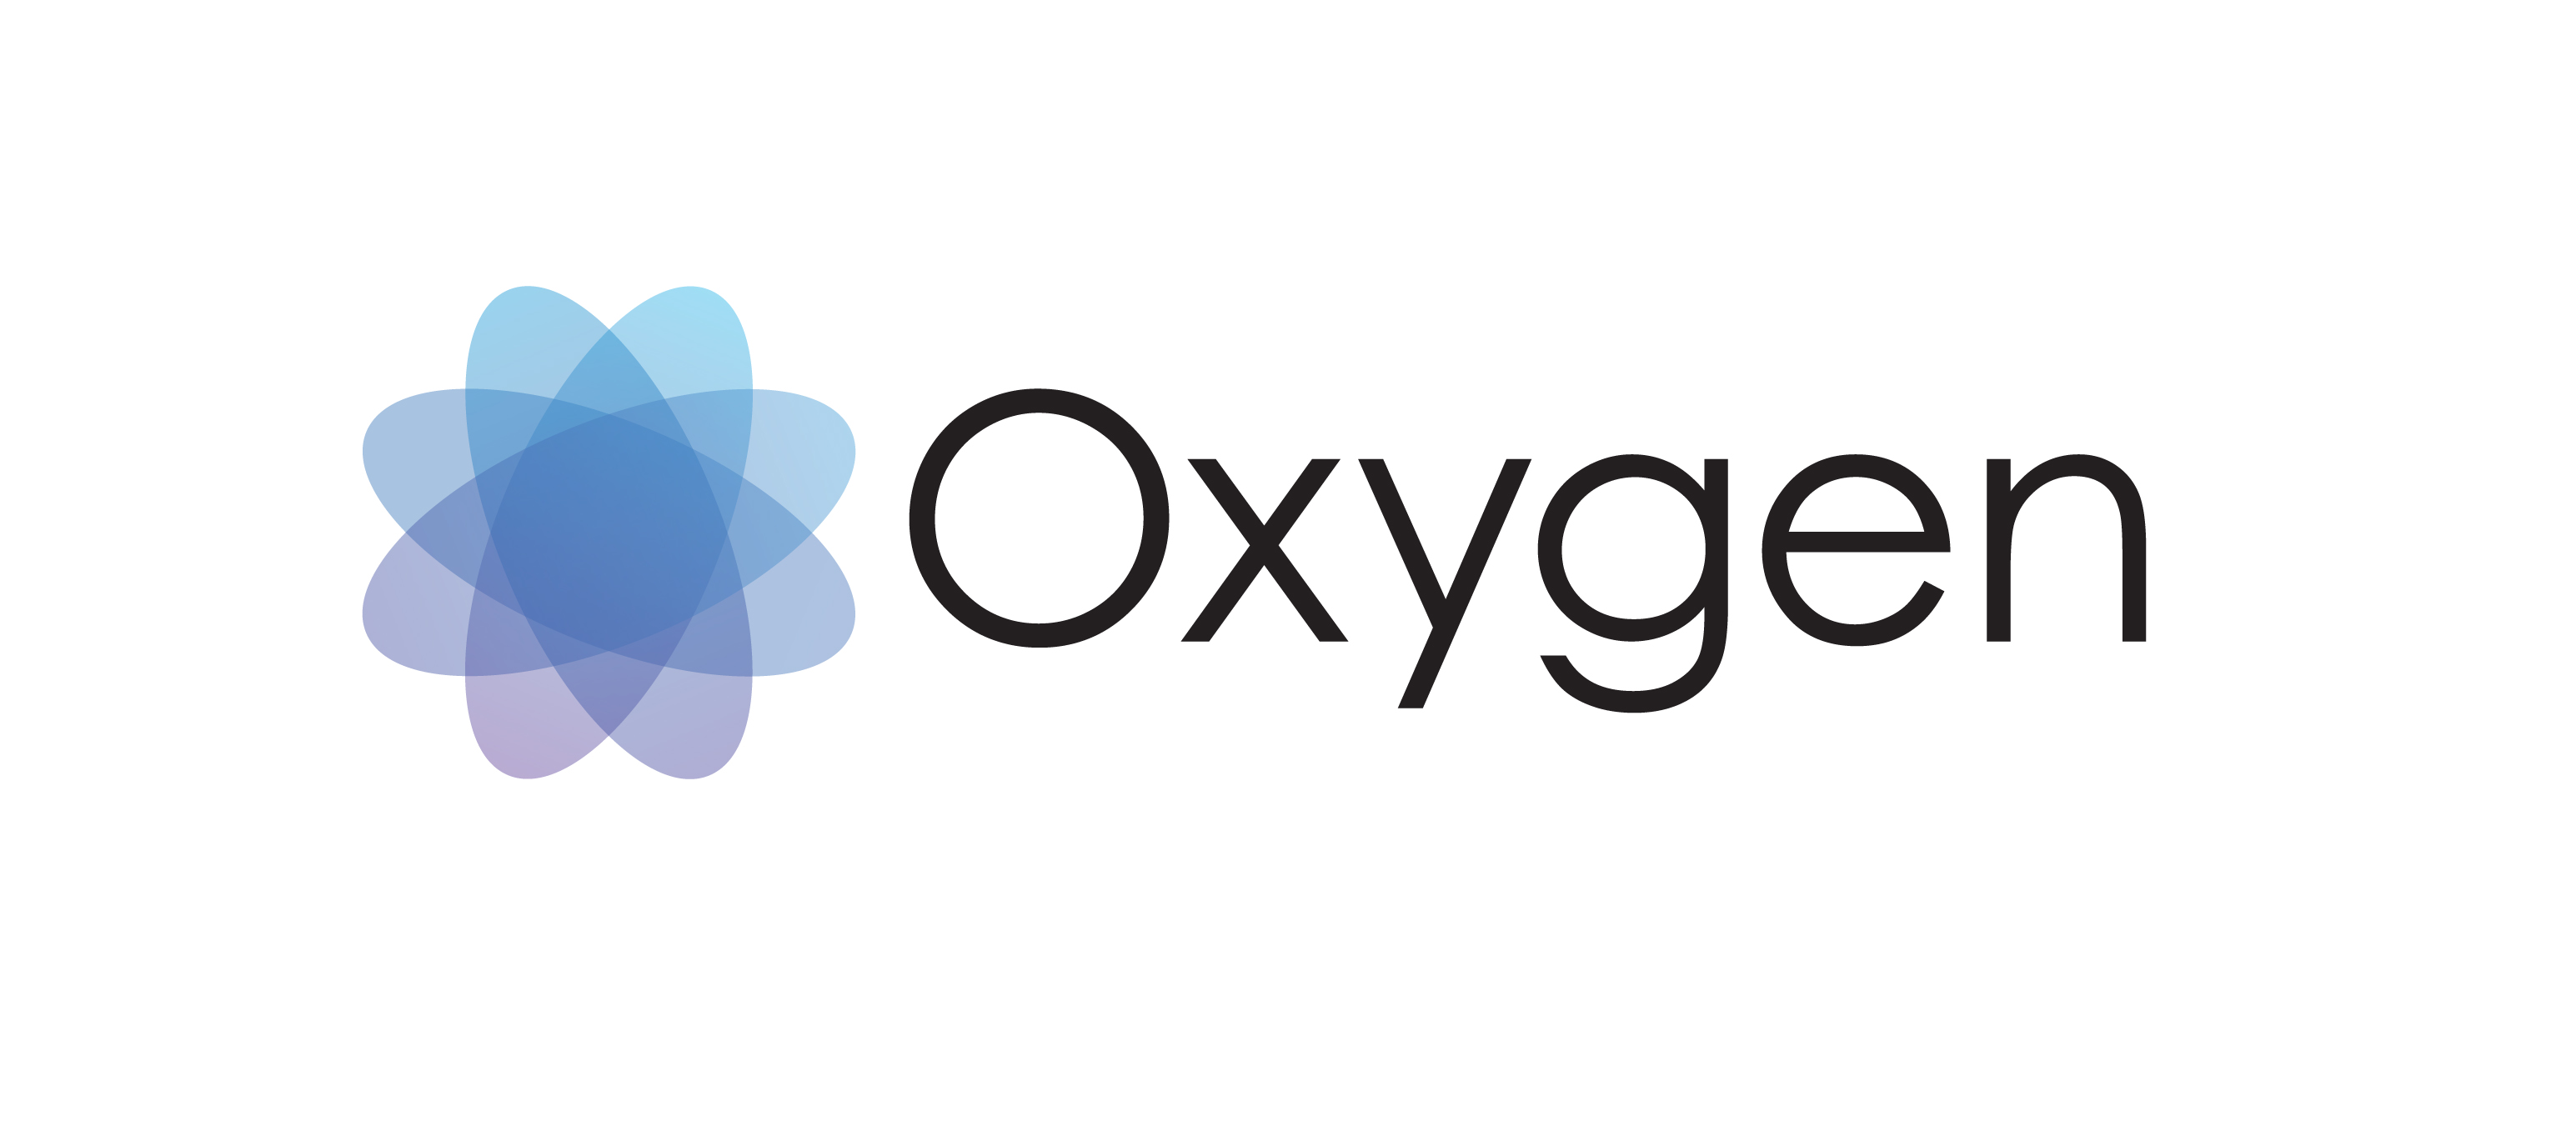 www oxygen org